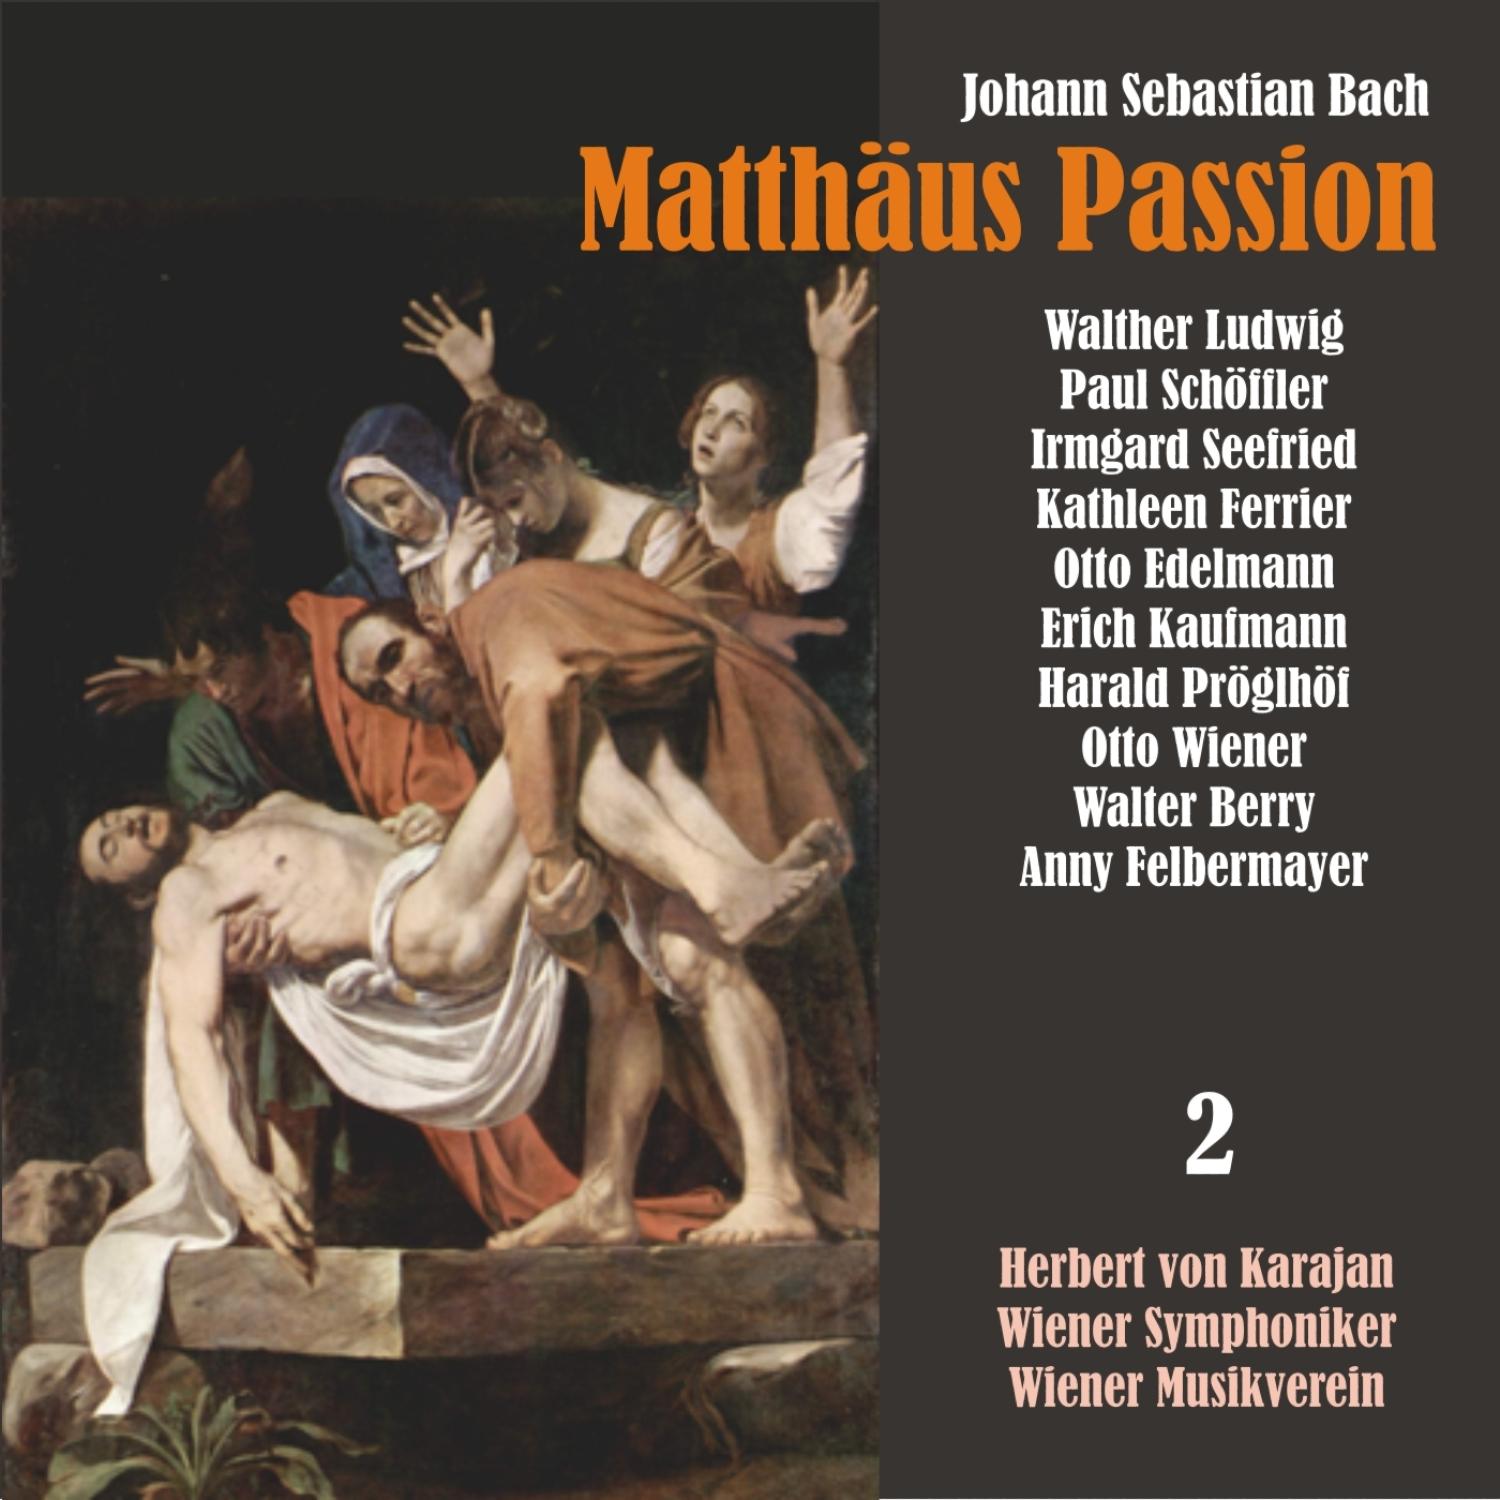 Matthäus Passion, BWV 244: "Ach! nun ist mein Jesu hsn!"